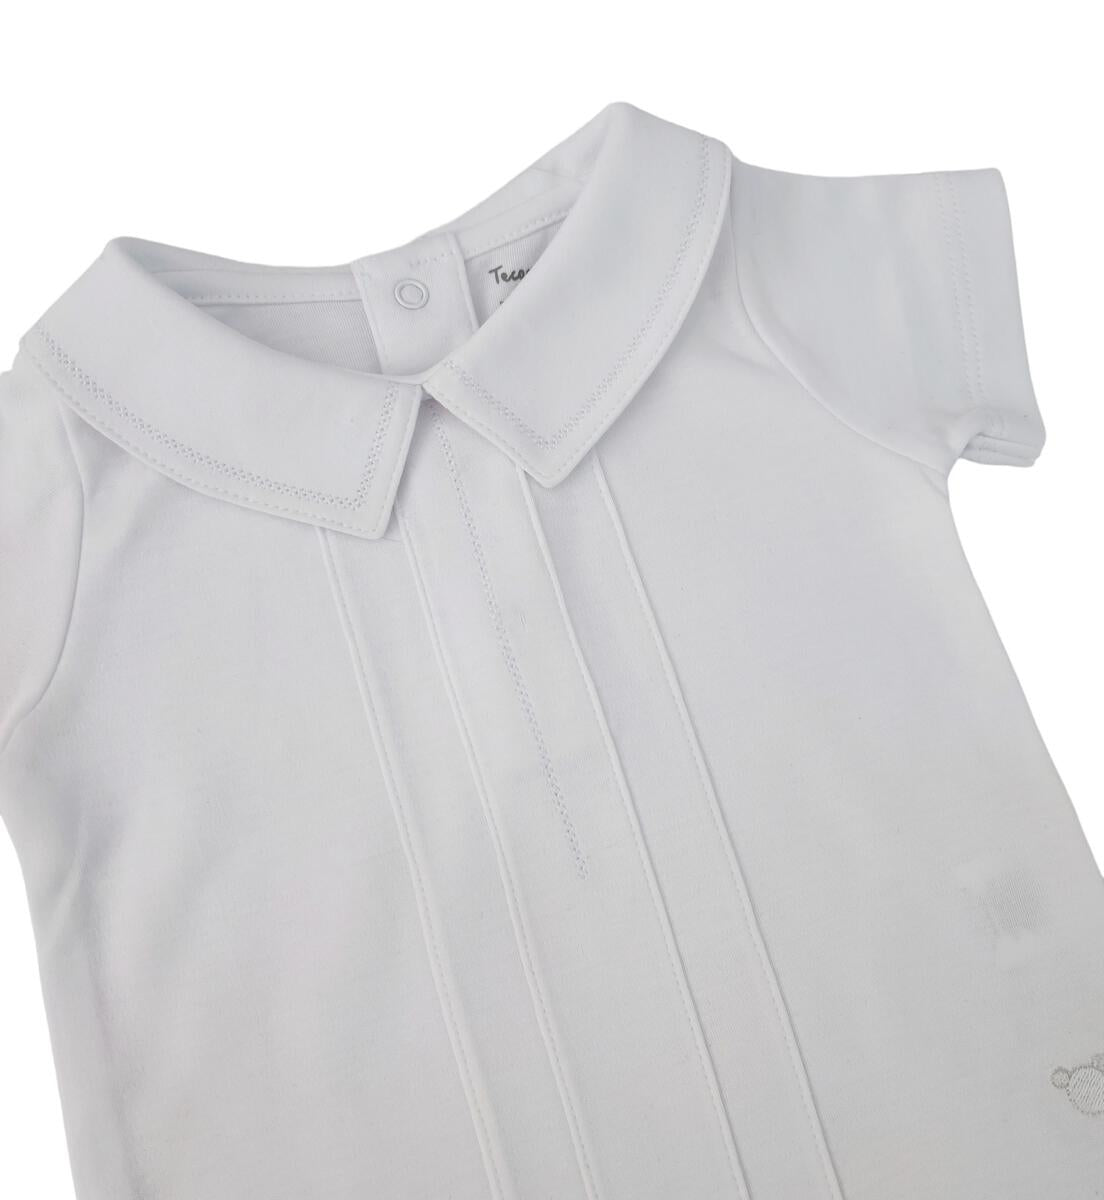 Joseph Embroidered Bodysuit Short Sleeve - White